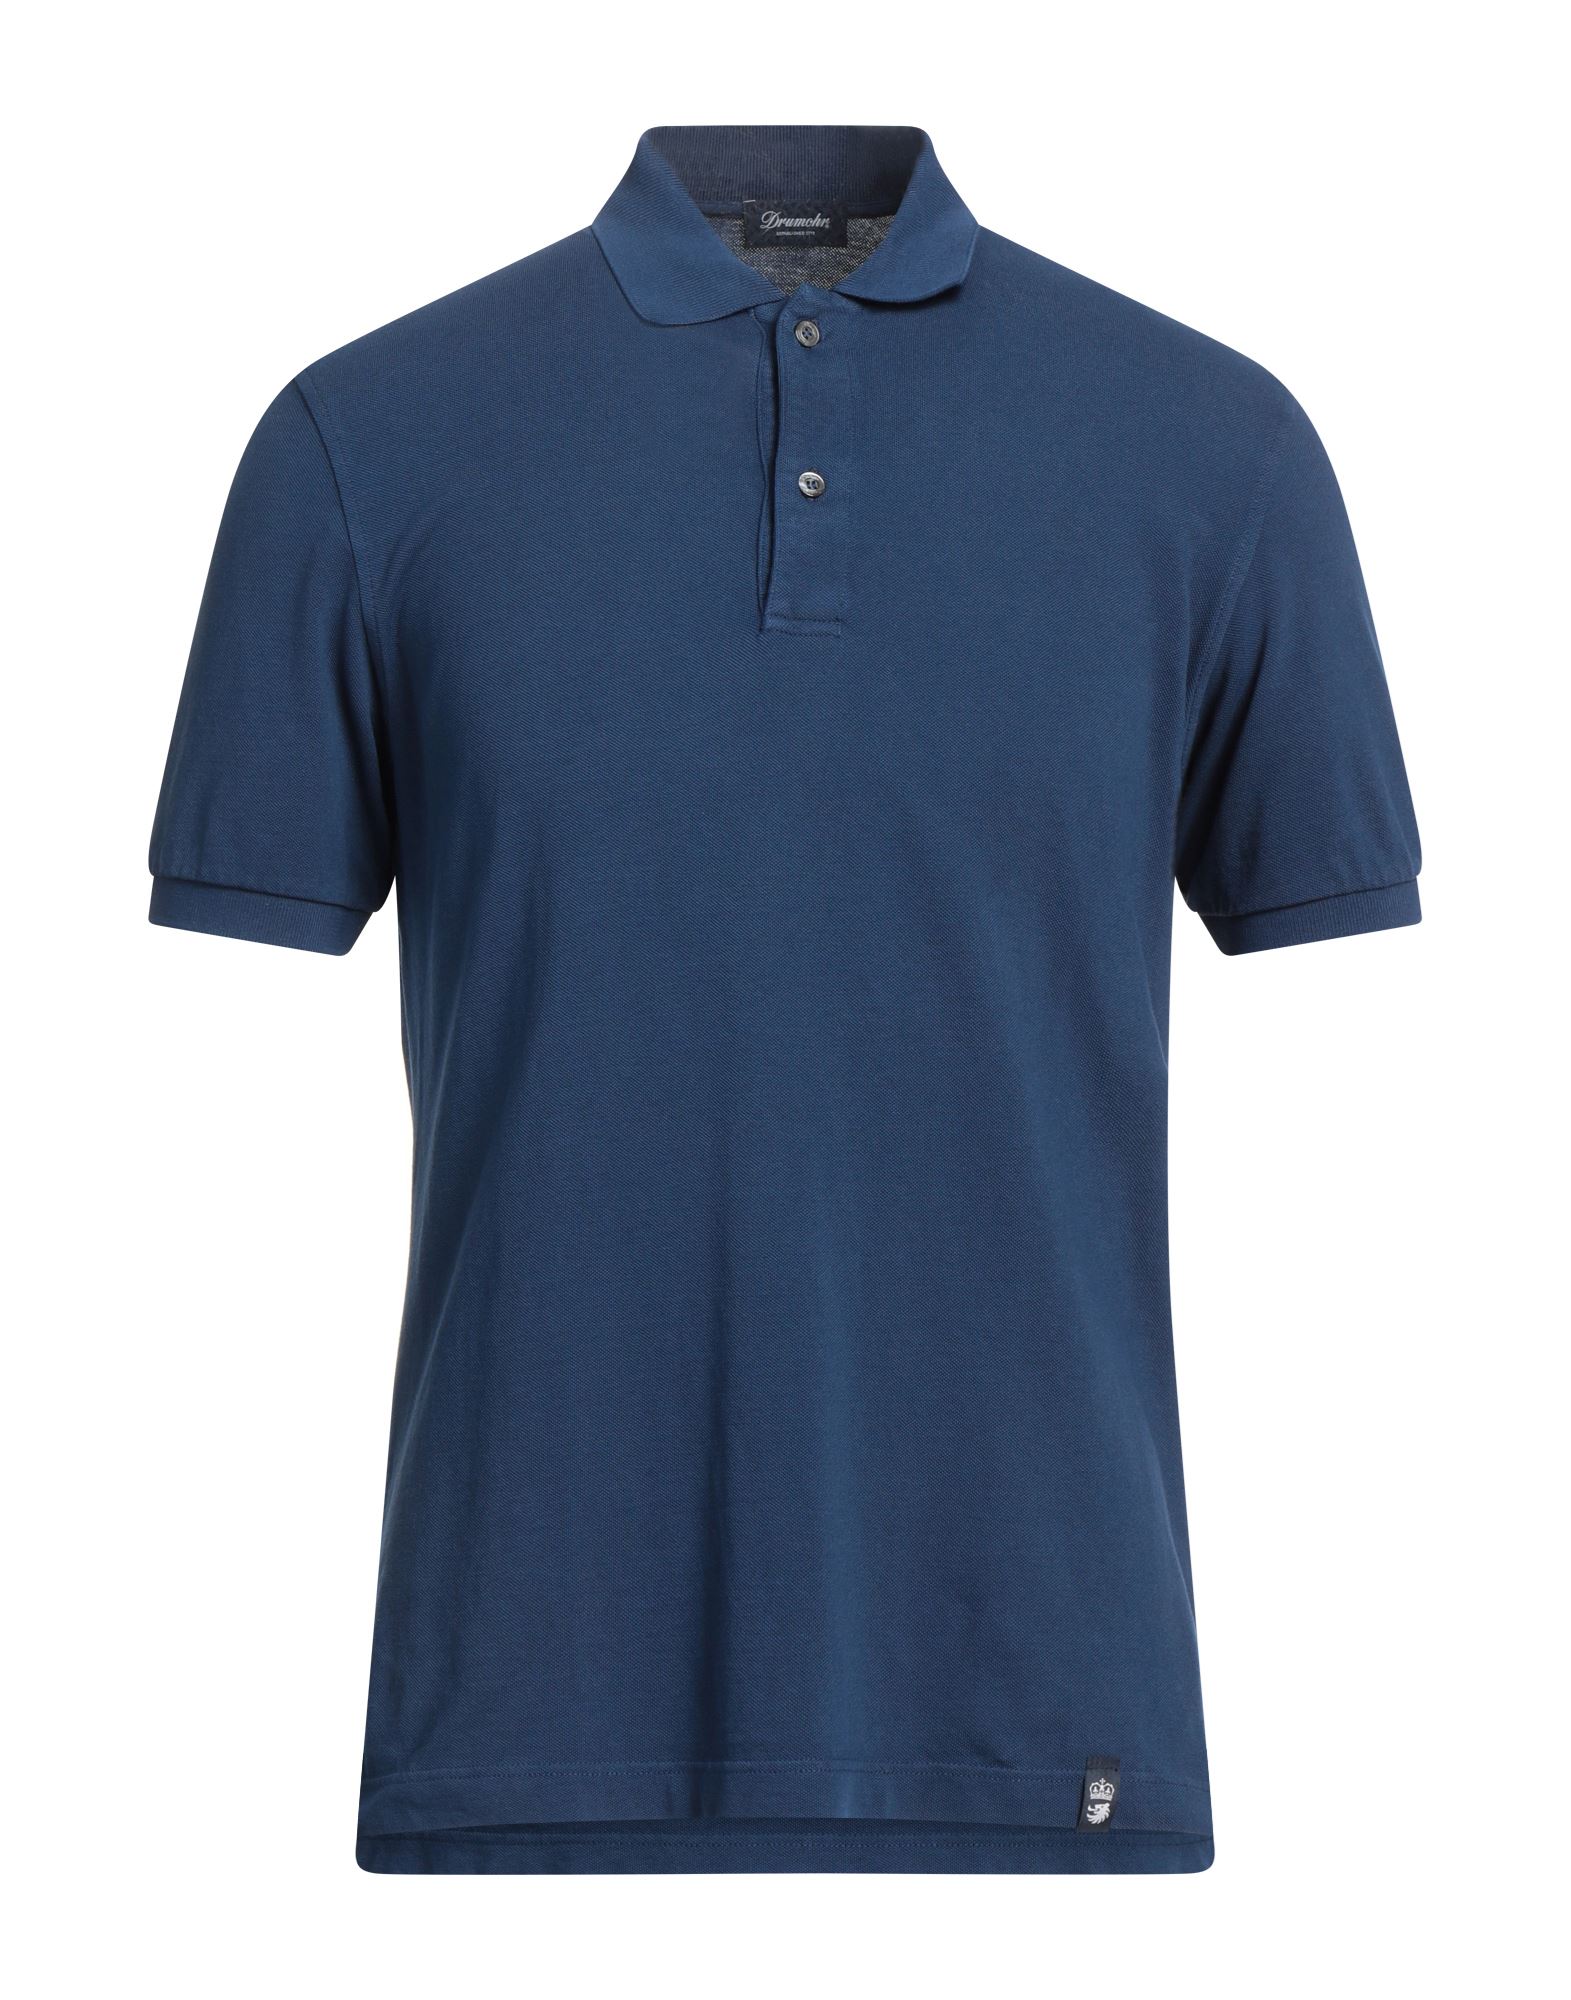 Drumohr Man Polo Shirt Navy Blue Size S Cotton